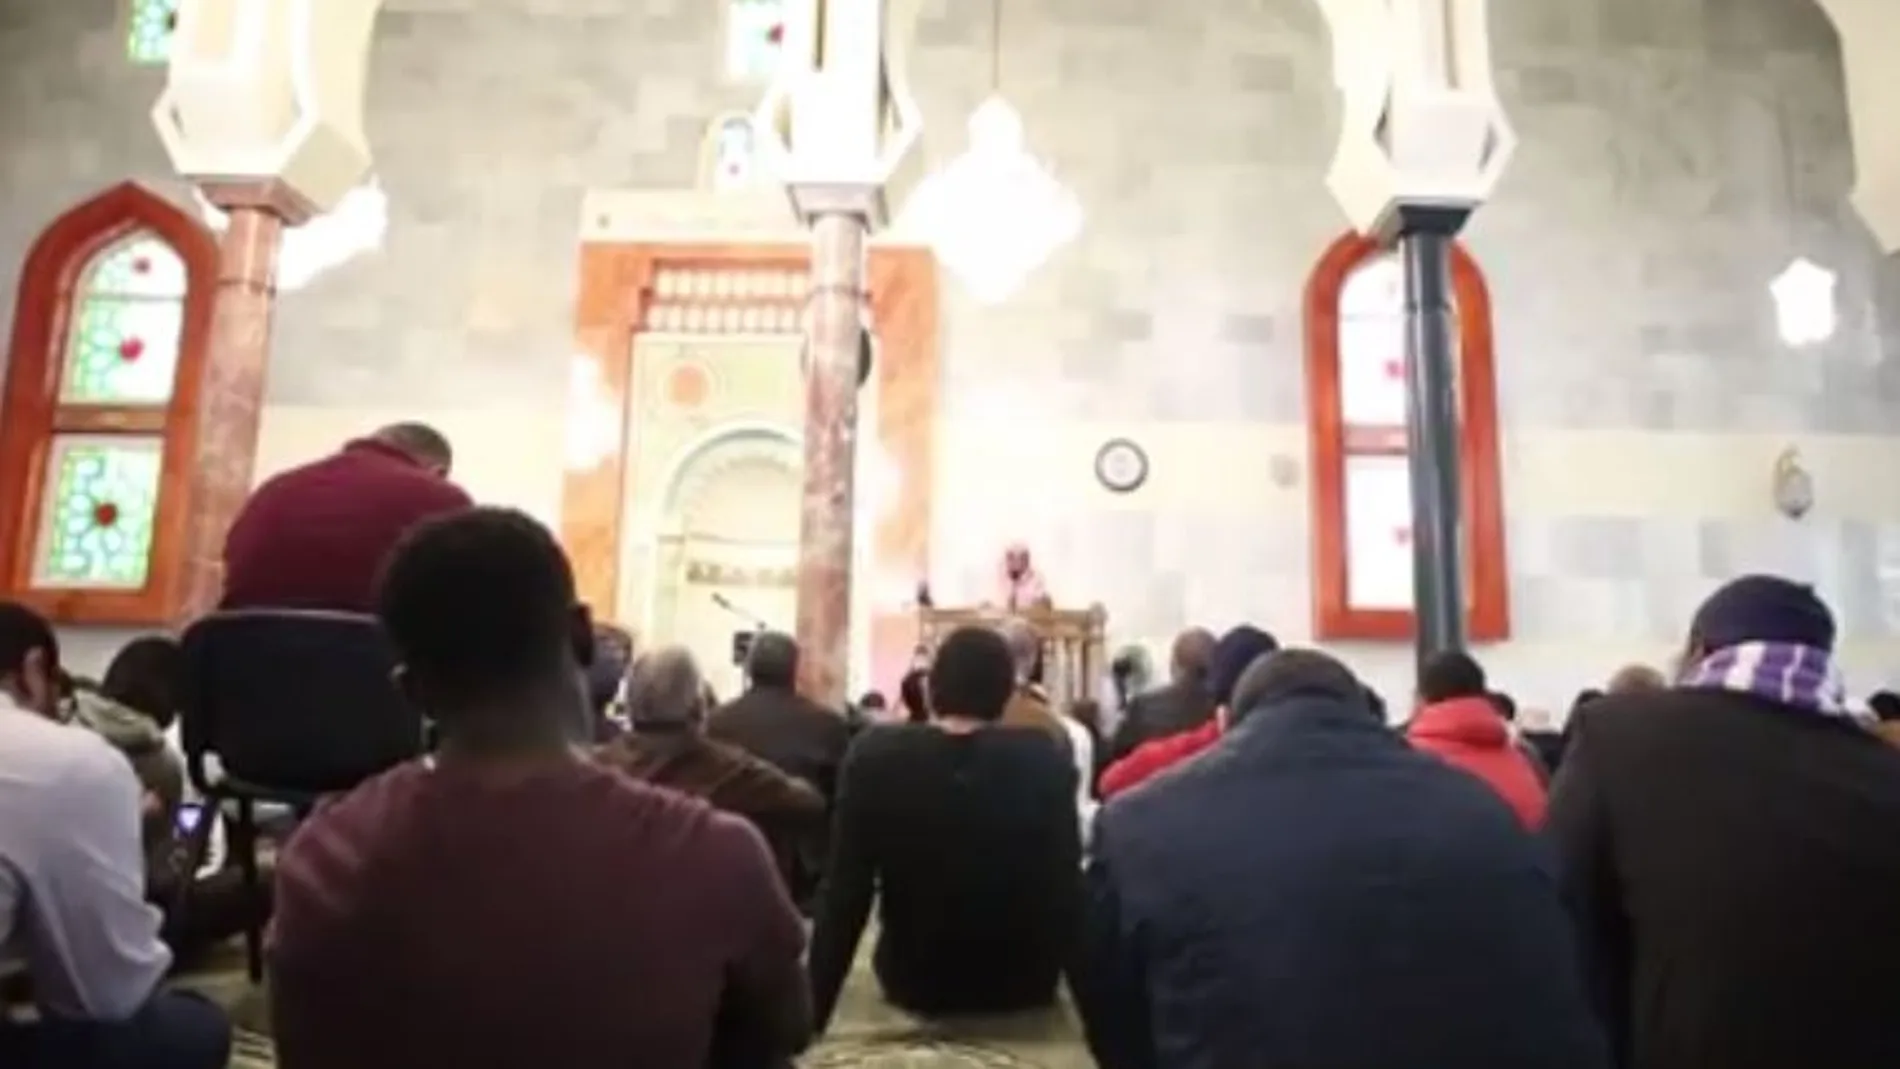 Homenaje a las víctimas de Nueva Zelanda en la mezquita de la M30